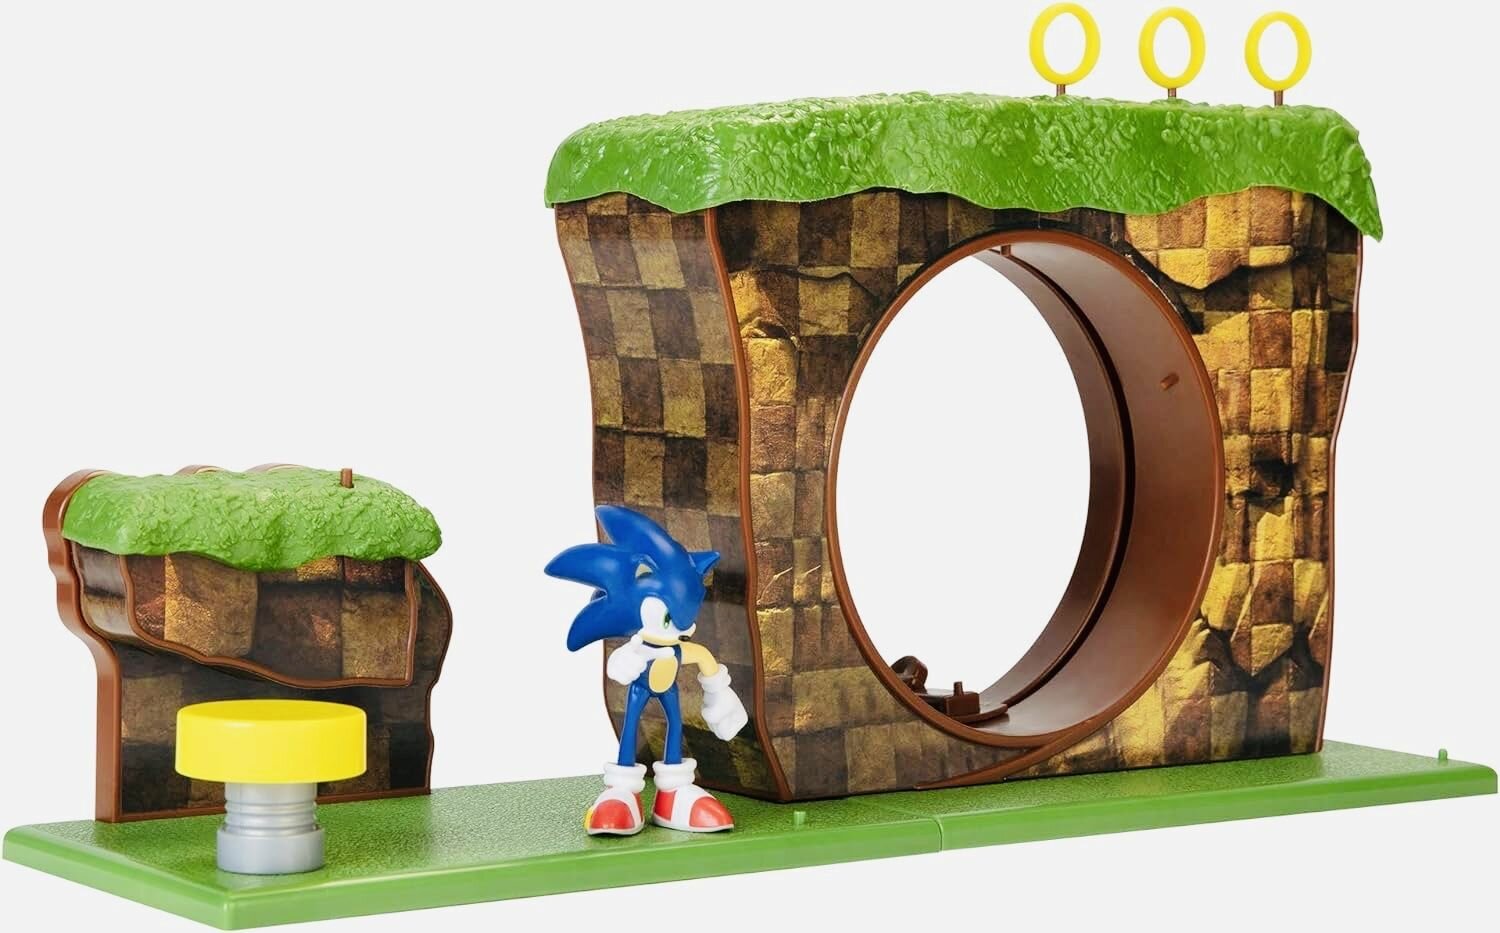 Соник Sonic The Hedgehog Green Hill Zone 6-сантиметровая фигурка, рабочая пружинная платформа и аксессуары в комплекте, игровой набор Greenhills коллекционная мини-фигурка